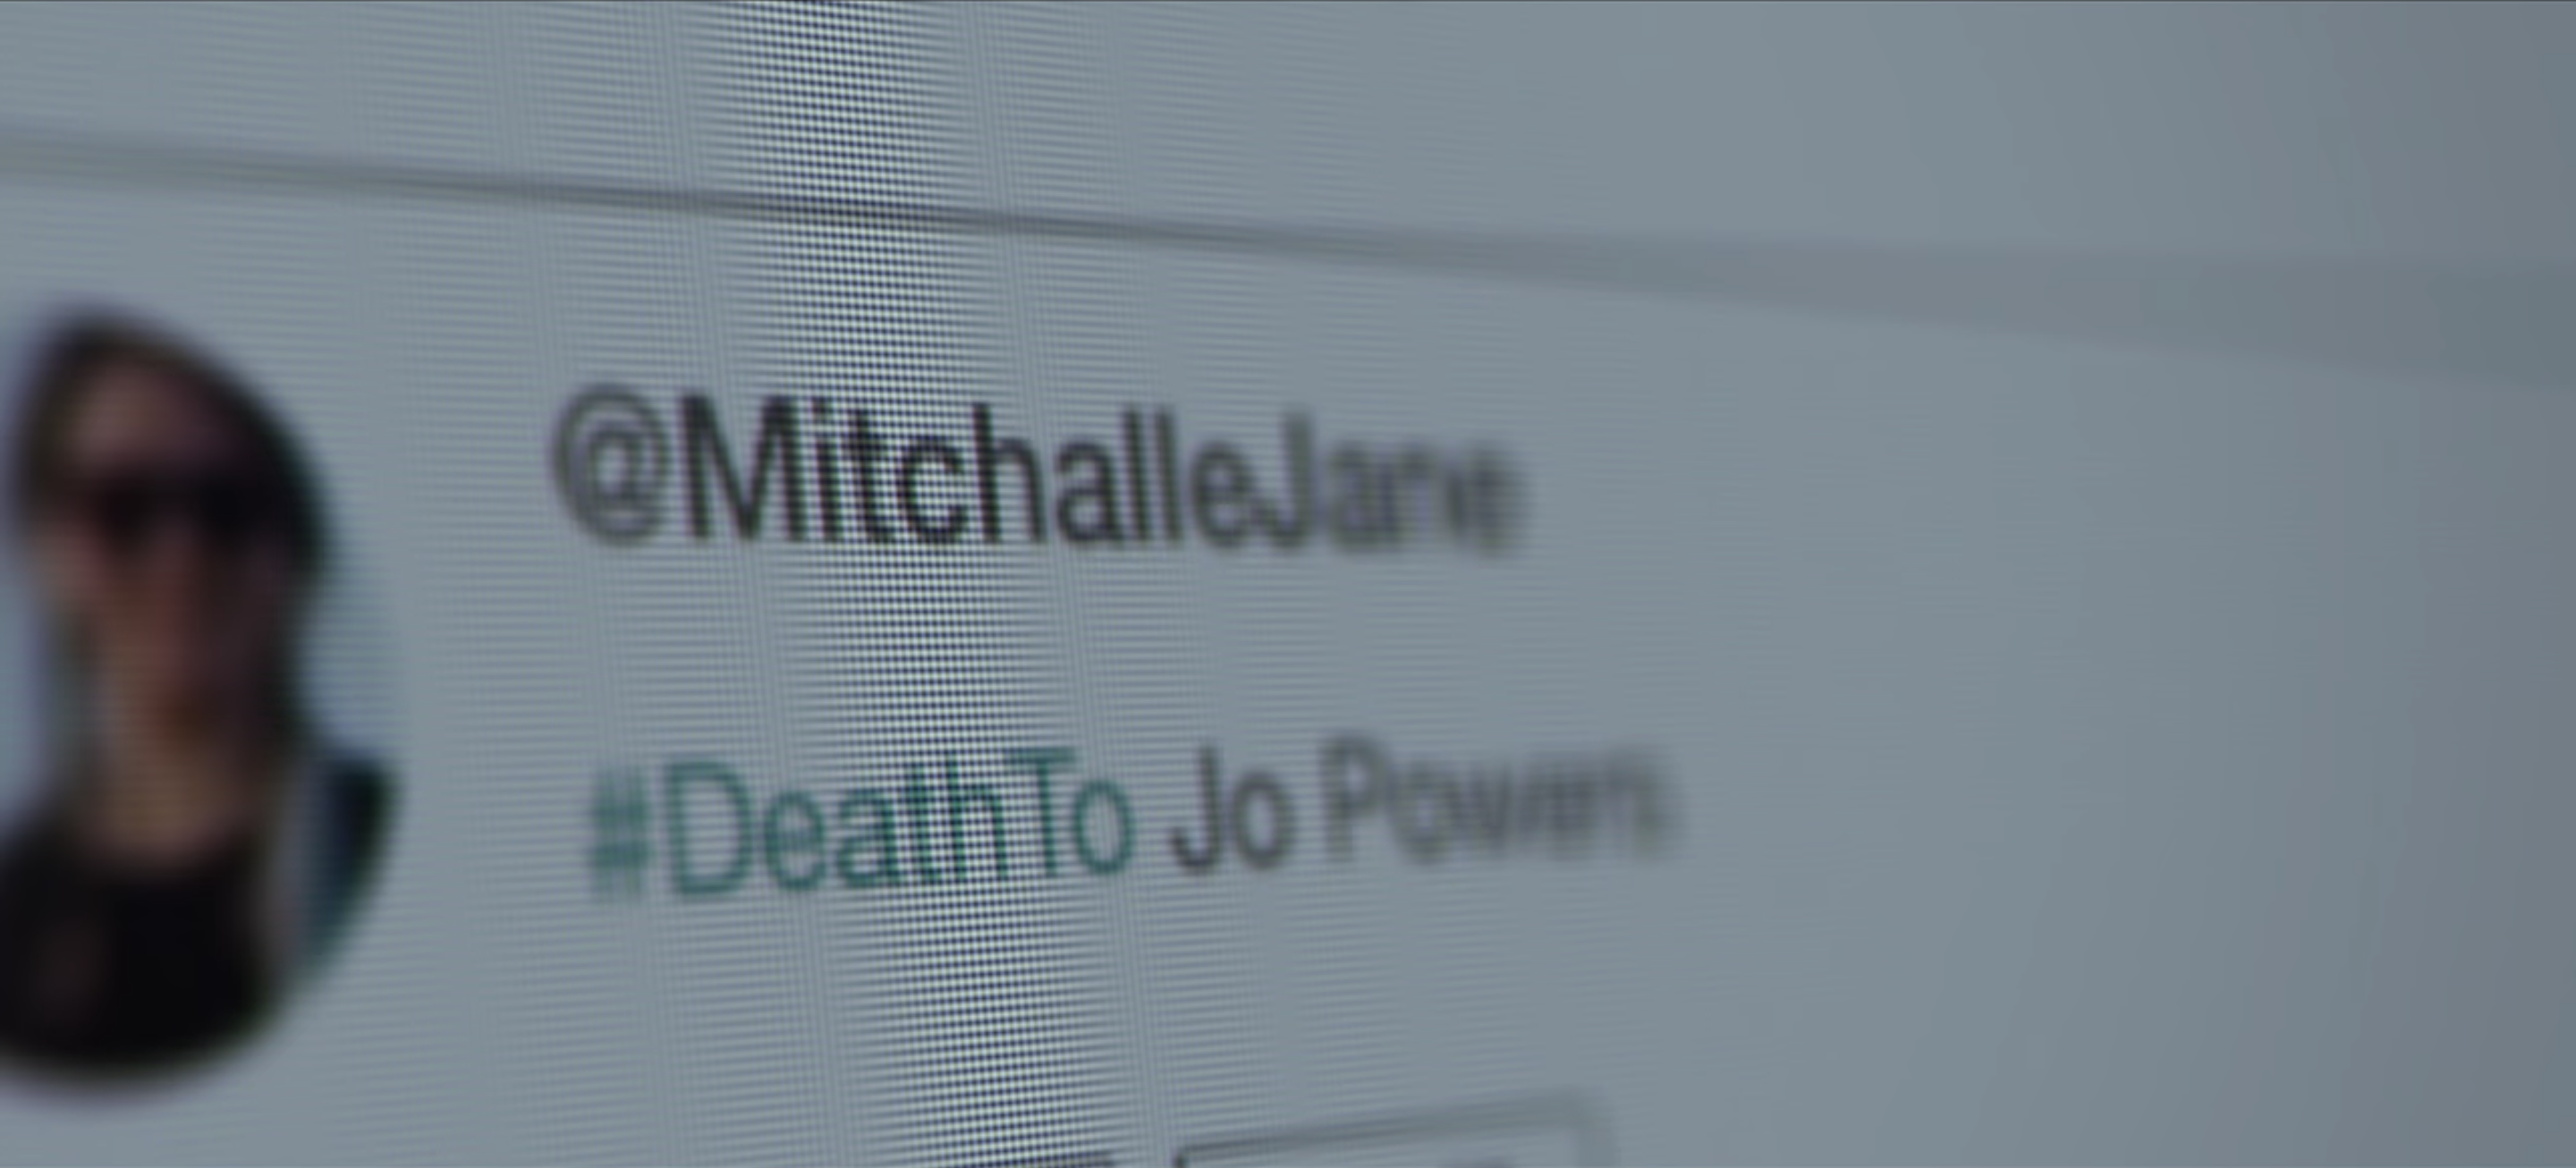 Tweet #DeathTo Jo Powers